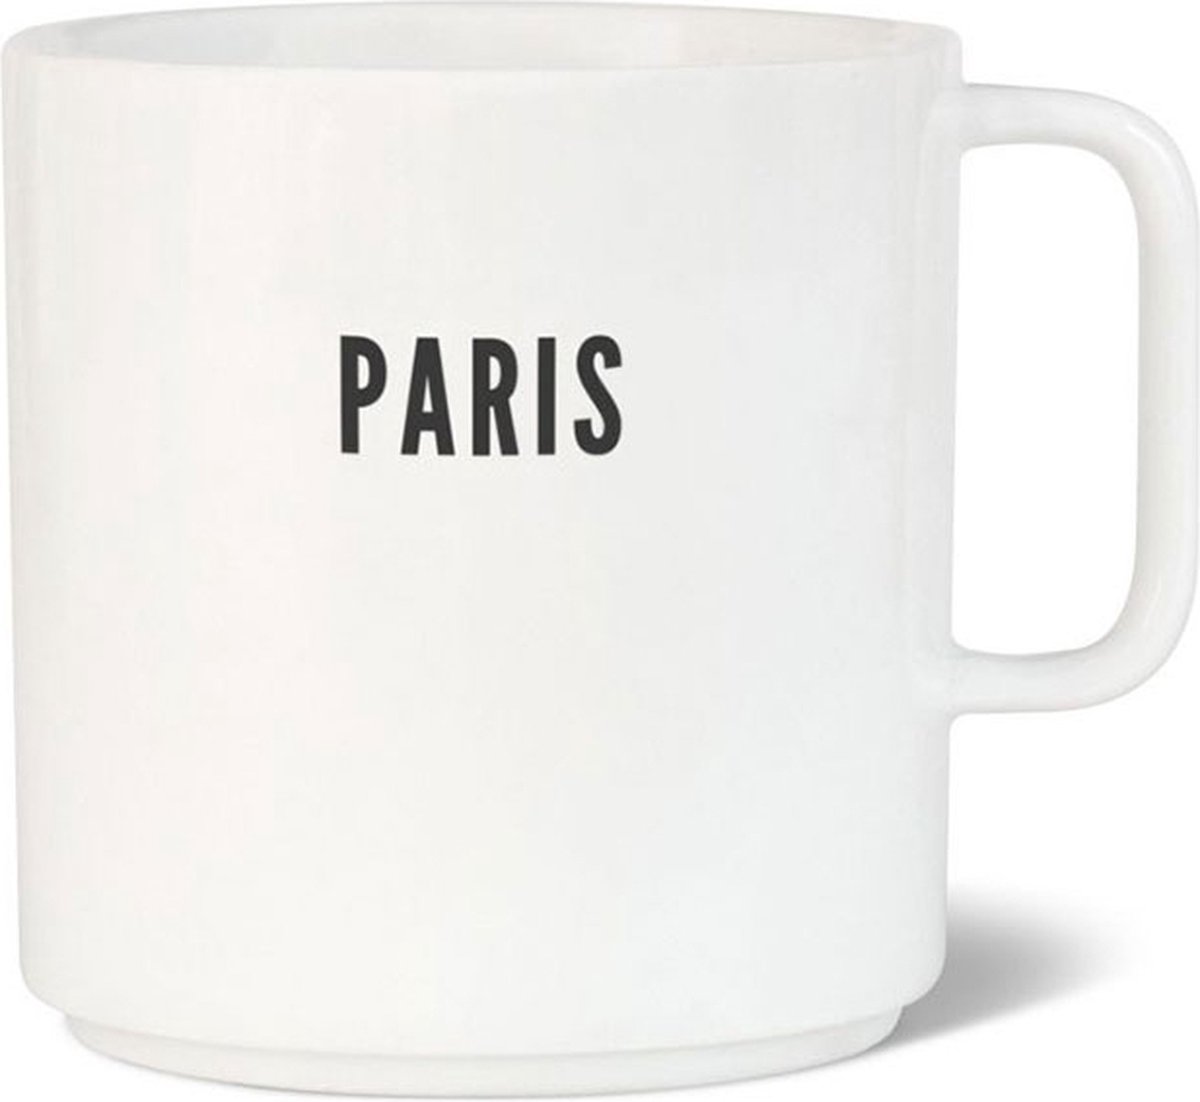 Paris City Coffee mug